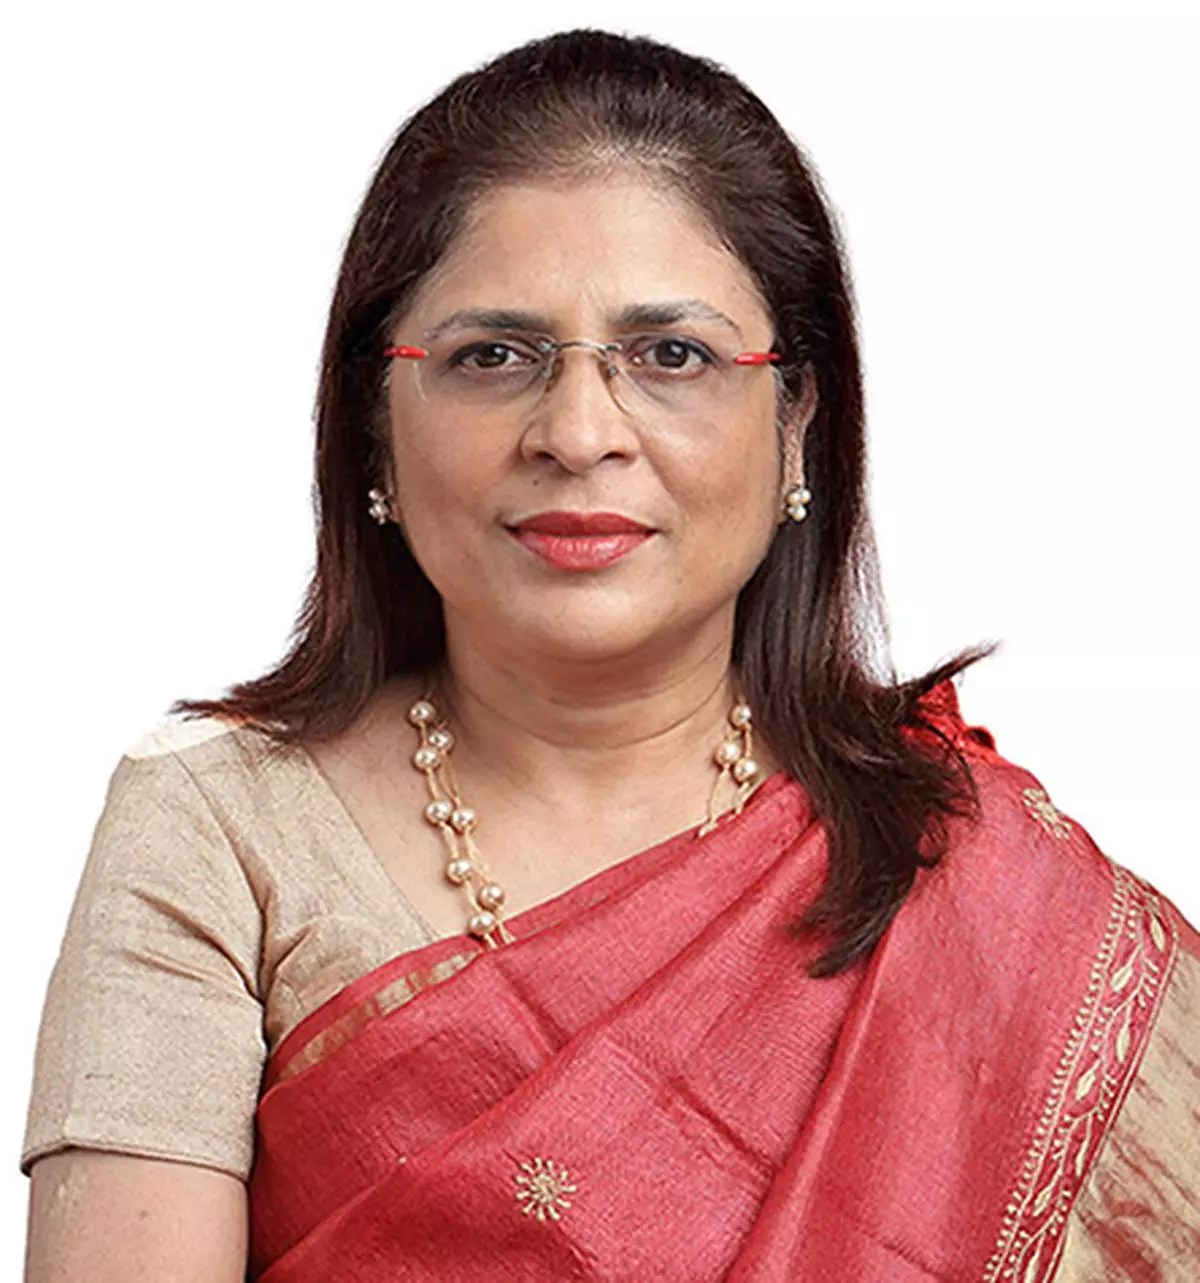 Vibha Padalkar, MD and CEO, HDFC Life